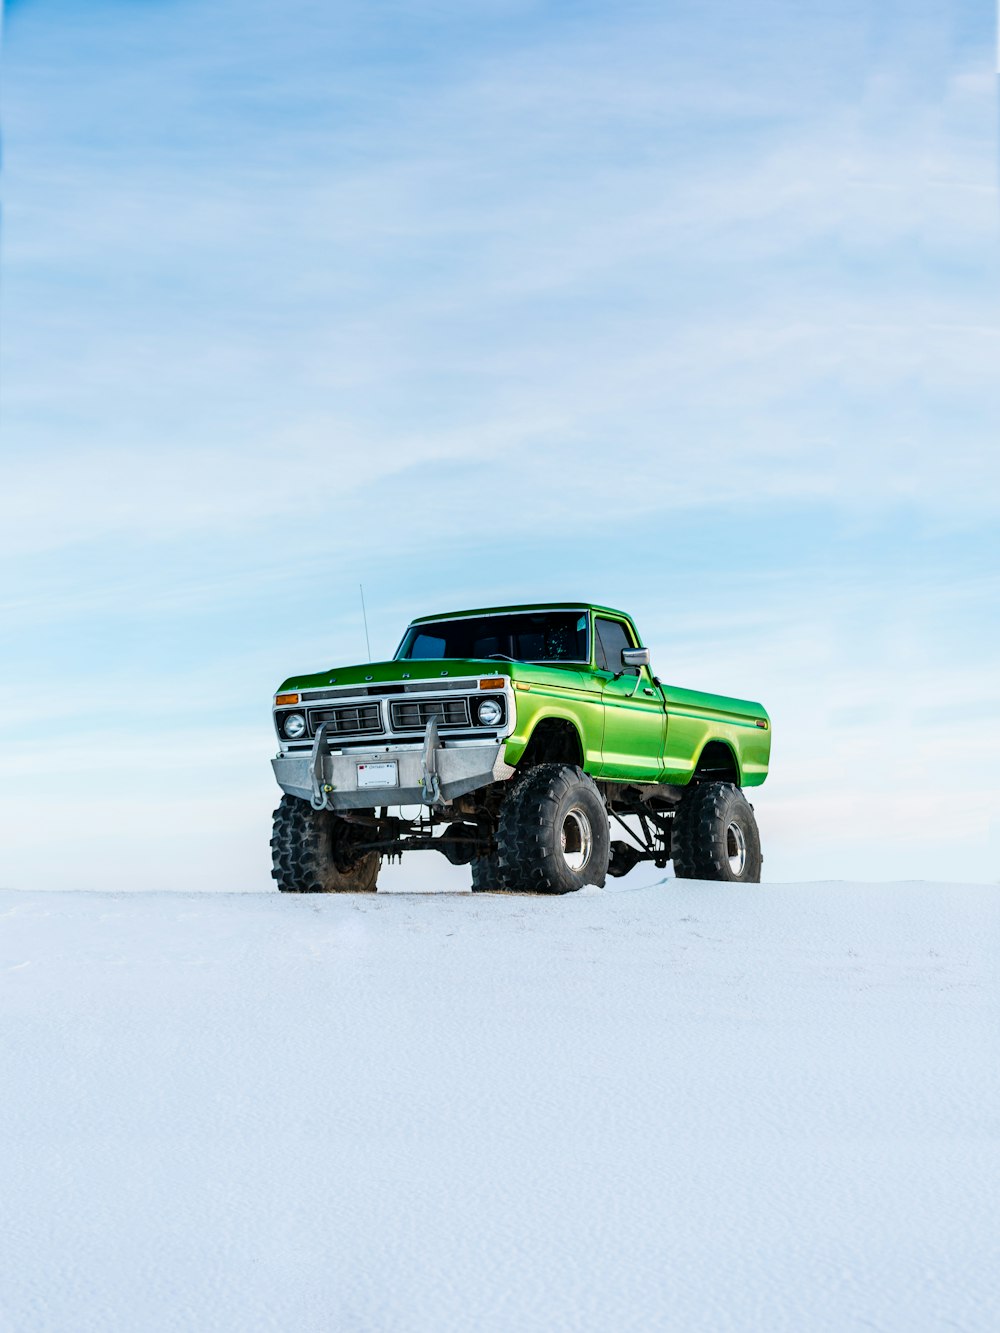 Grüner Geländewagen auf Schnee während der Wintersaison